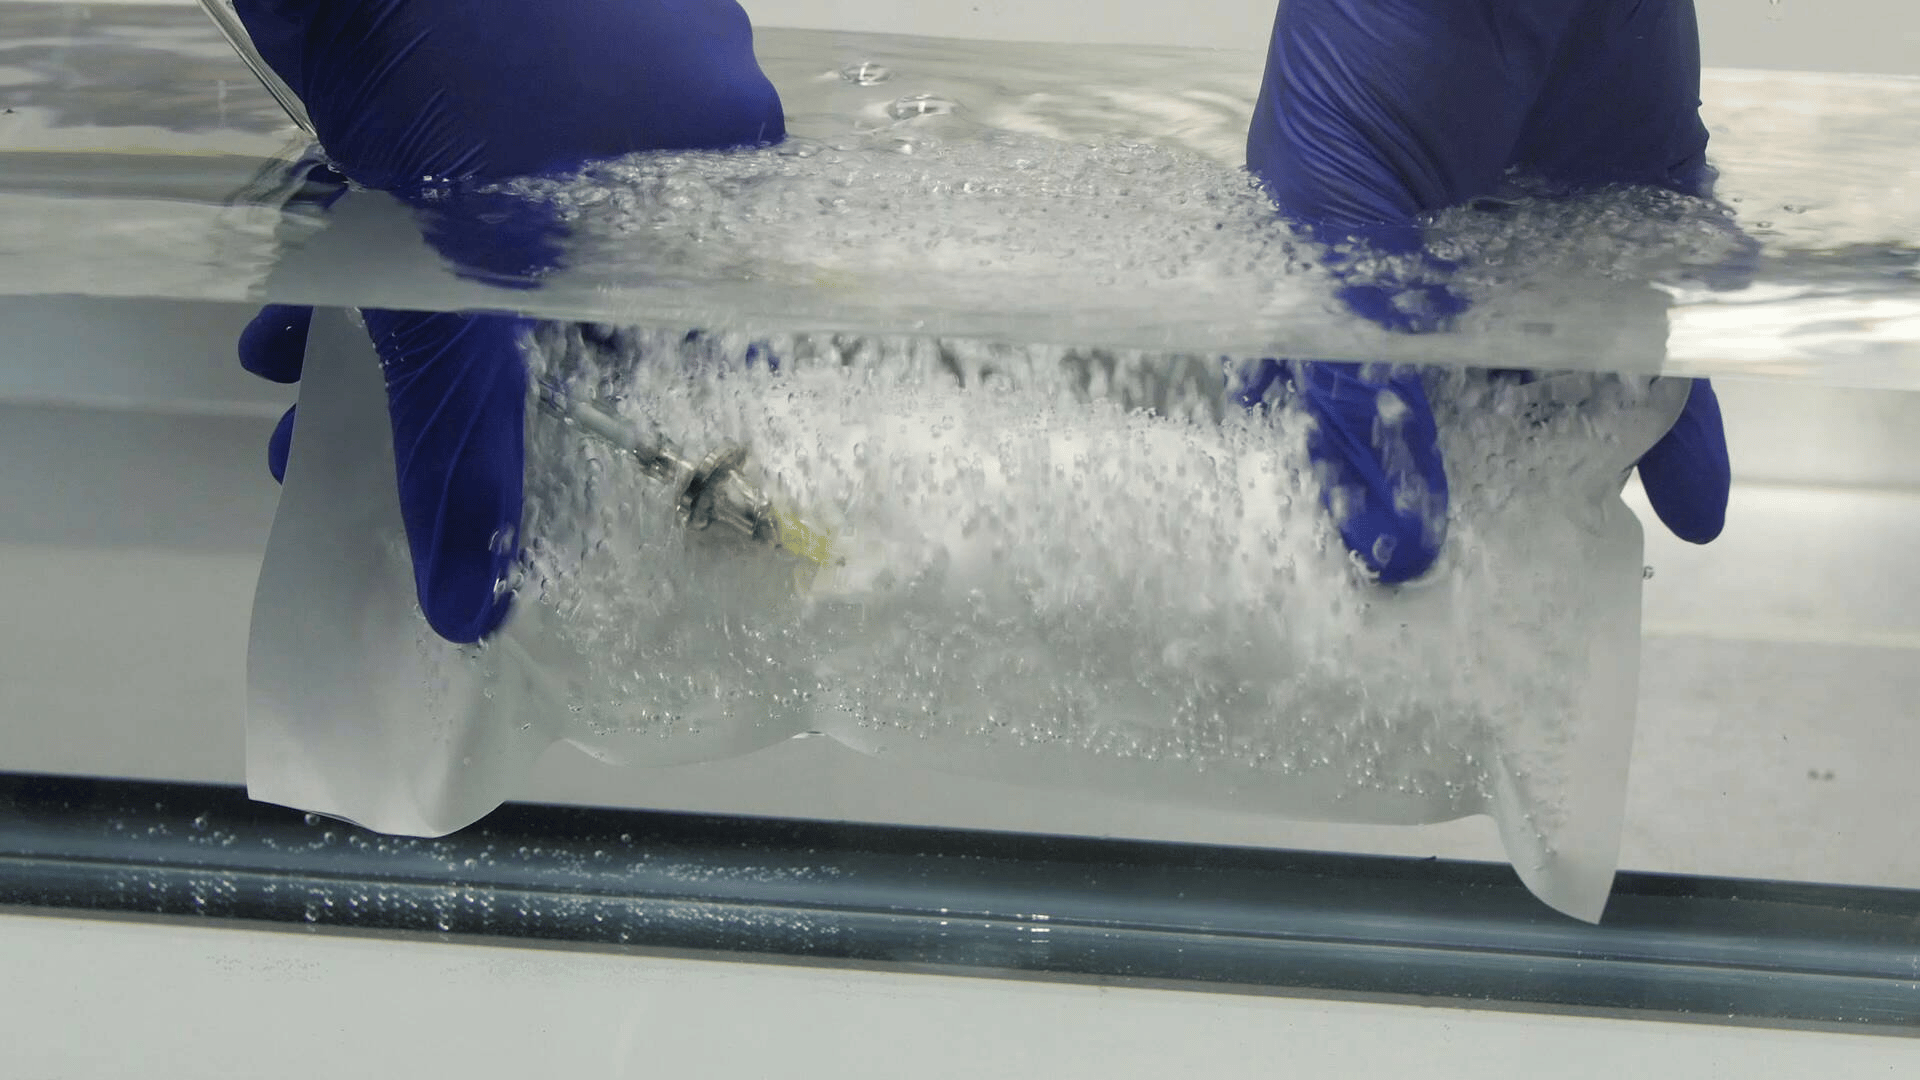 ASTM F2096 (Bubble Leak Test Without Pinhole)